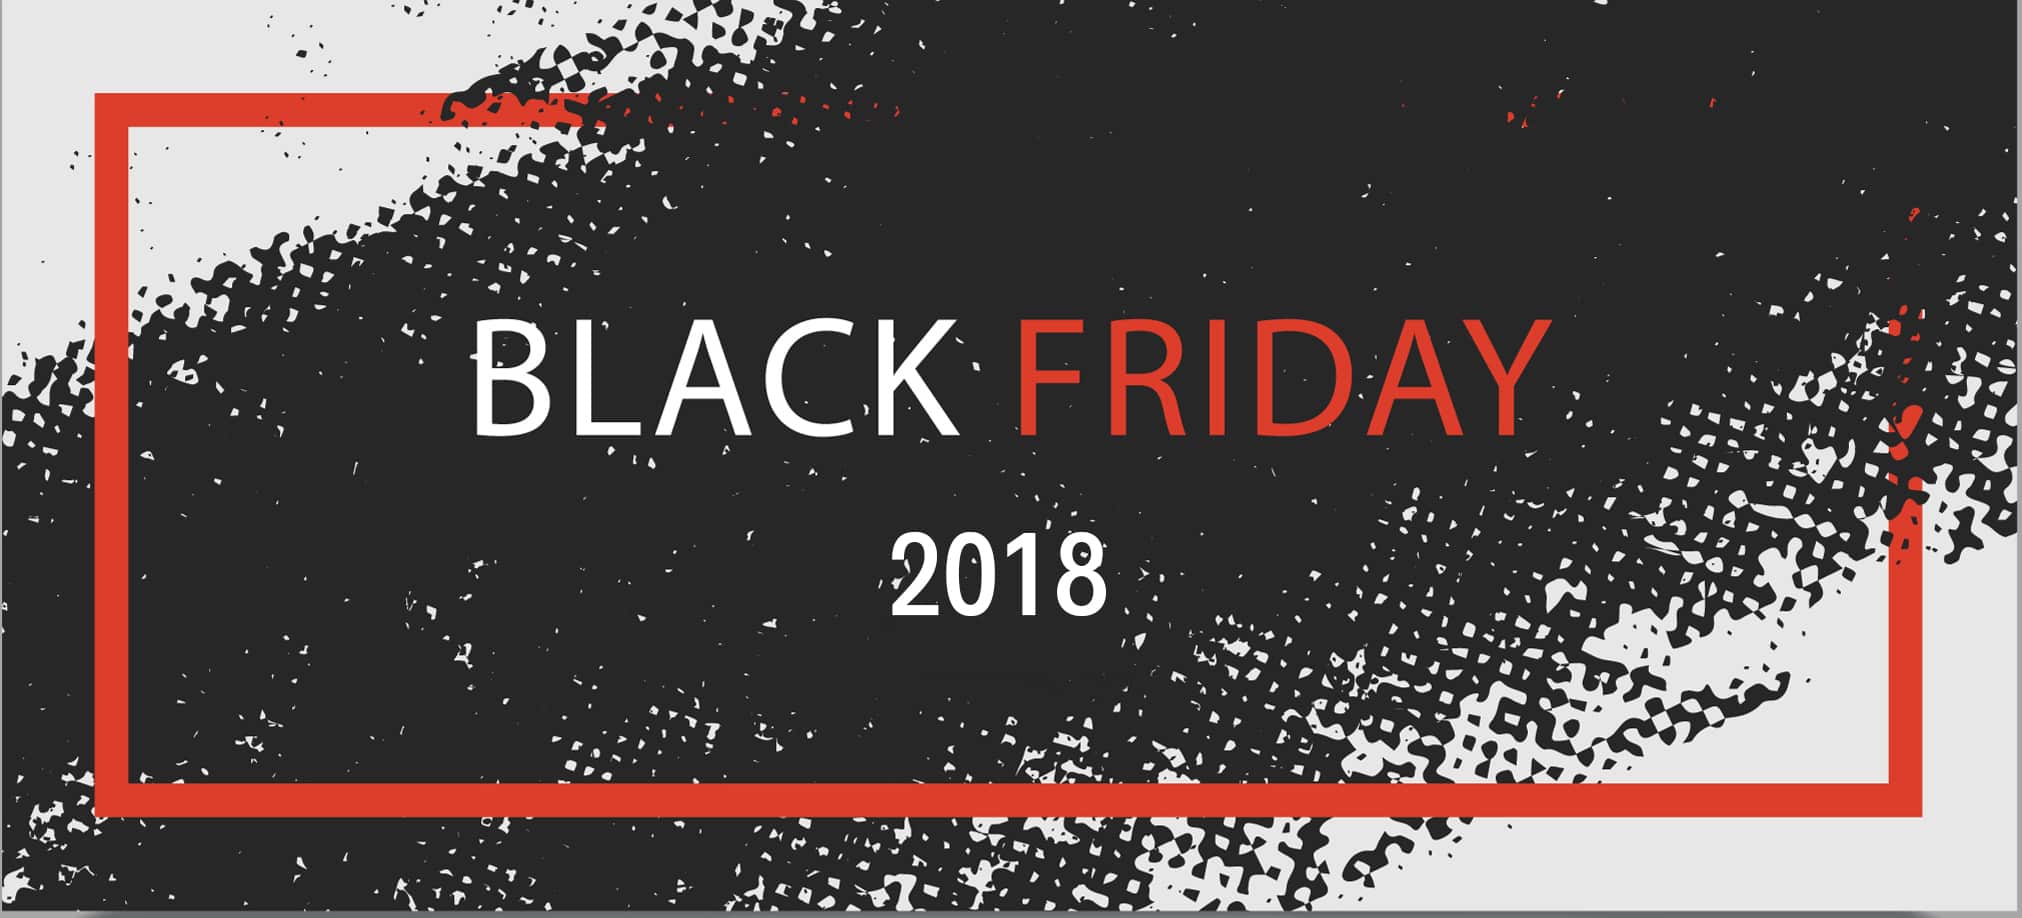 Black Friday (Week) 2018 : Sélection des meilleurs deals sportifs (Amazon) - Does Quadratec Have Black Friday Deals